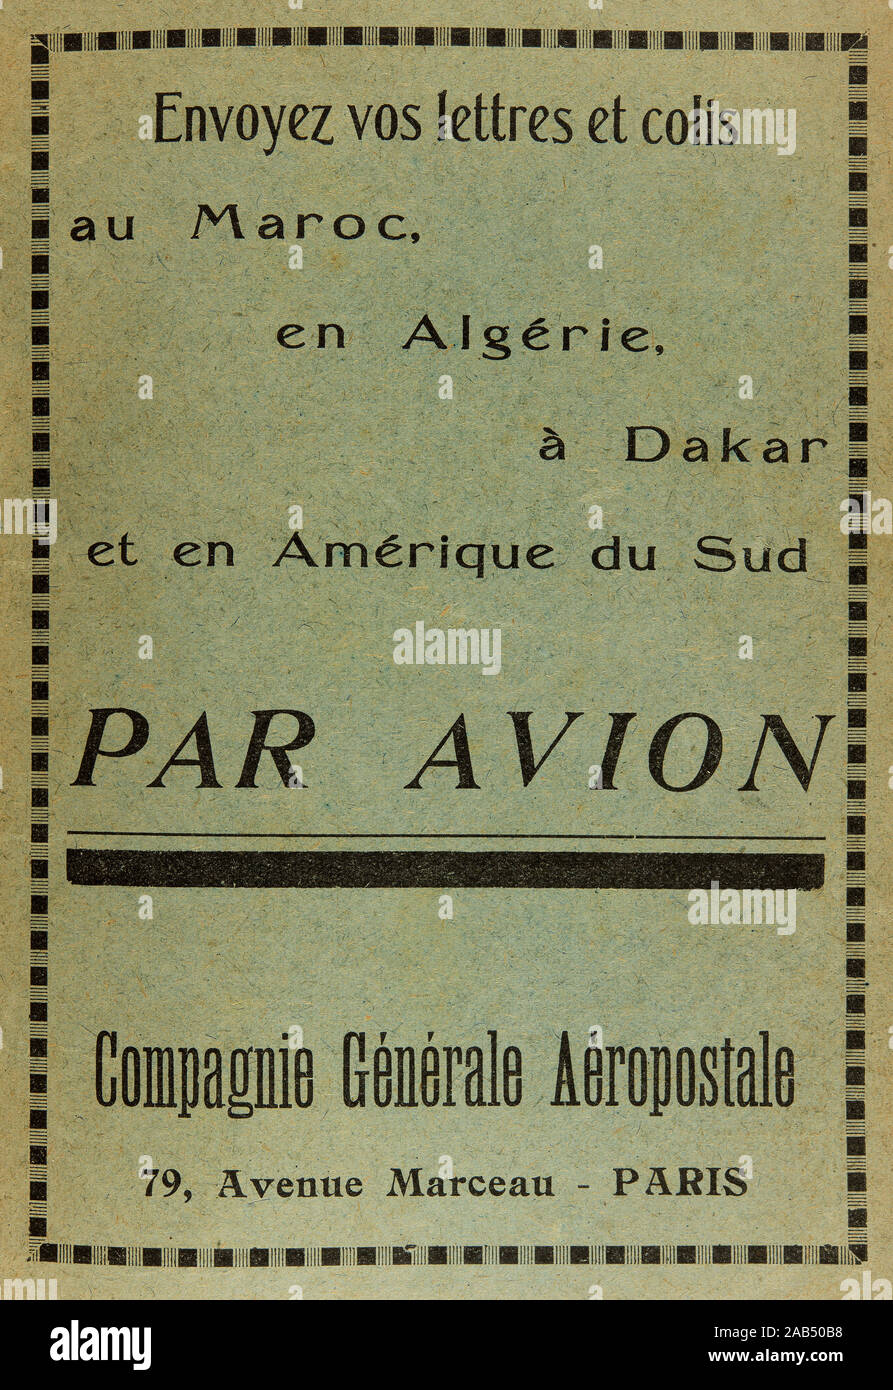 Publicidad para el servicio de correo aéreo entre Francia y Marruecos , 1928 Foto de stock